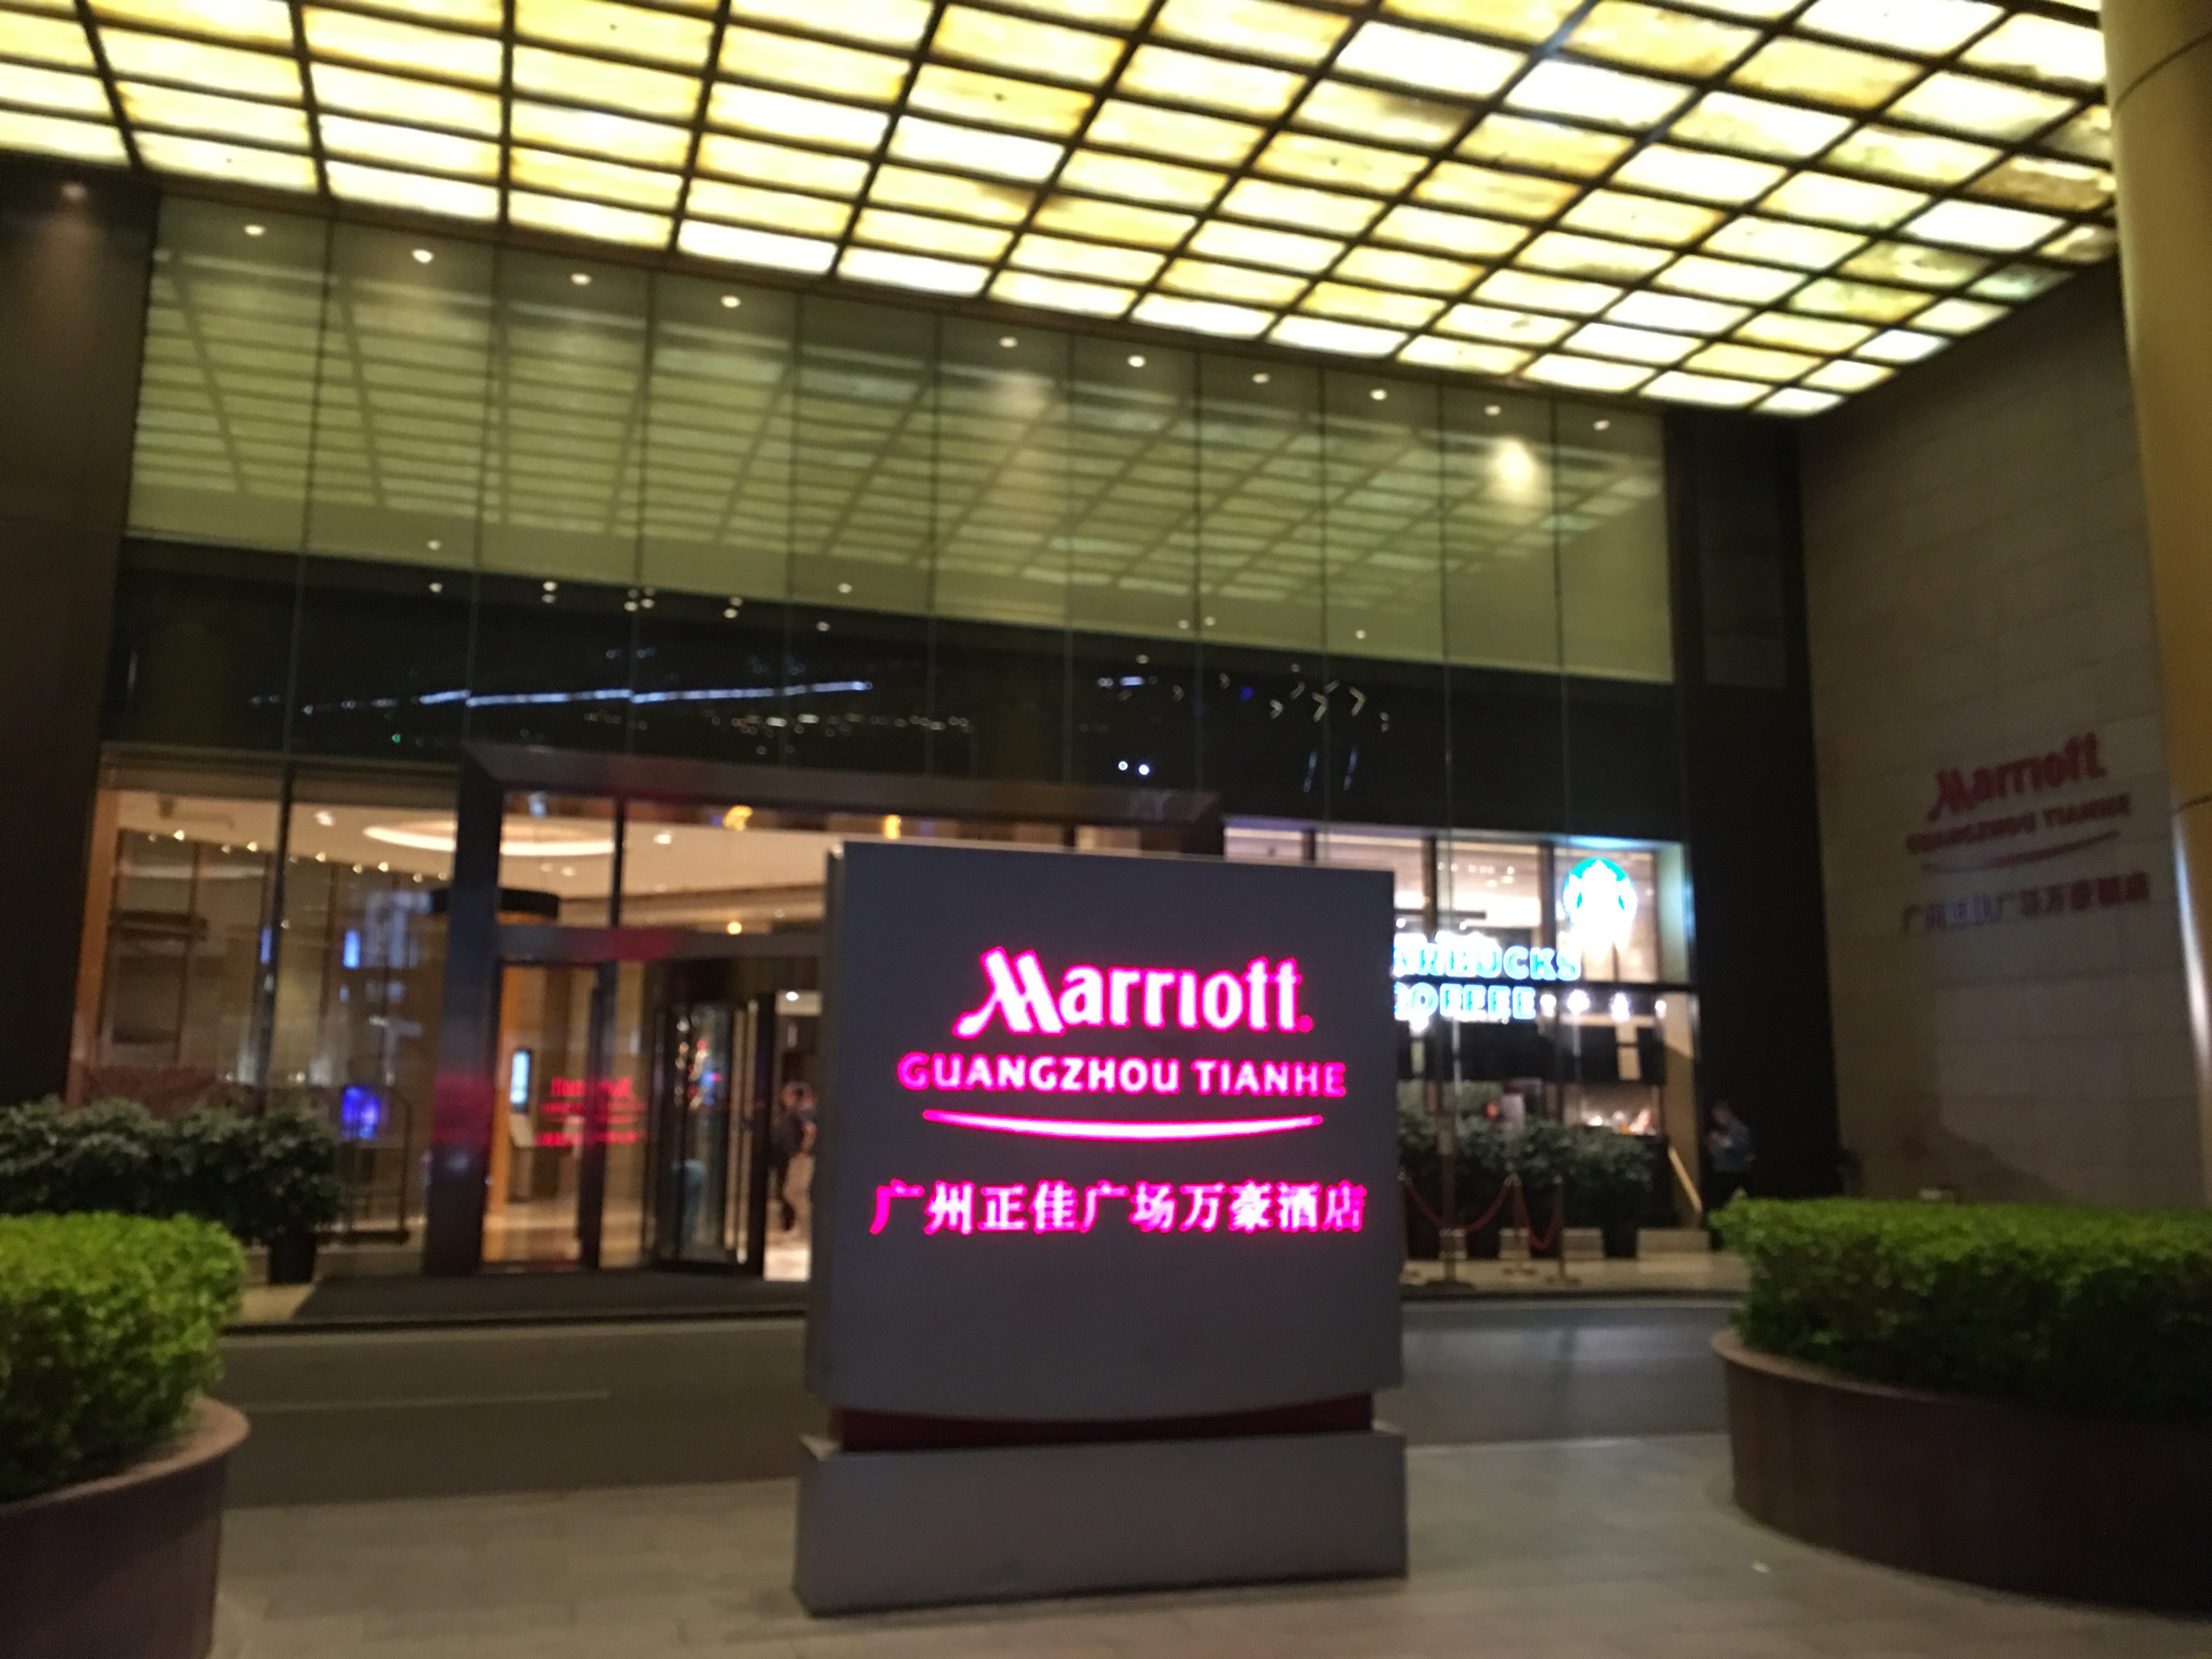 广州正佳广场万豪酒店第一次也是最后一次